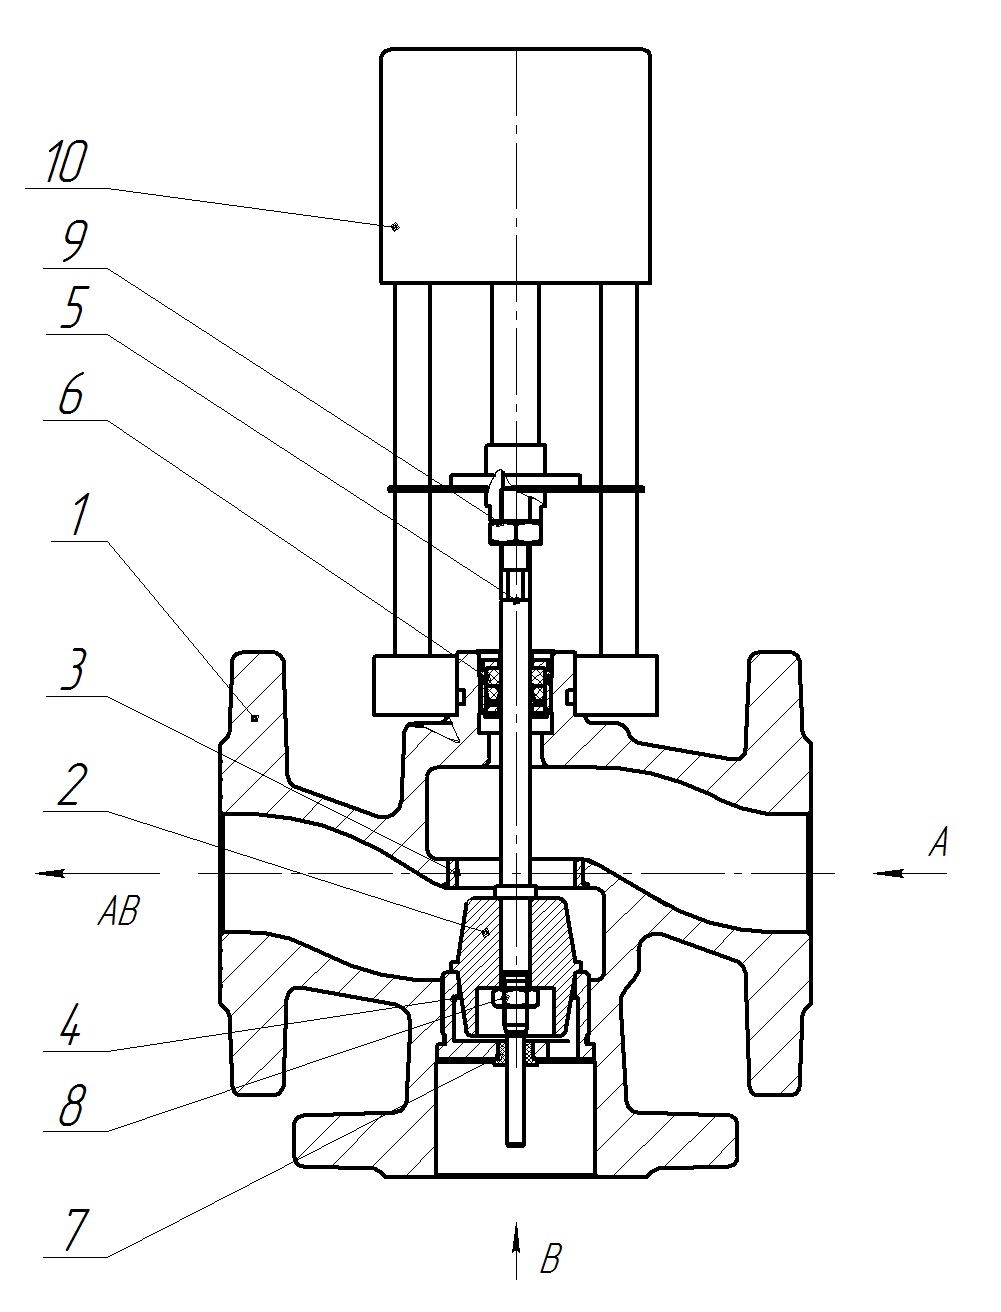 Клапан регулирующий трехходовой разделительный DN.ru 23ч901нж Ду32 Ру16 Kvs10 серый чугун СЧ20, фланцевый, Tmax до 150°С с электроприводом Катрабел TW-500-XD220